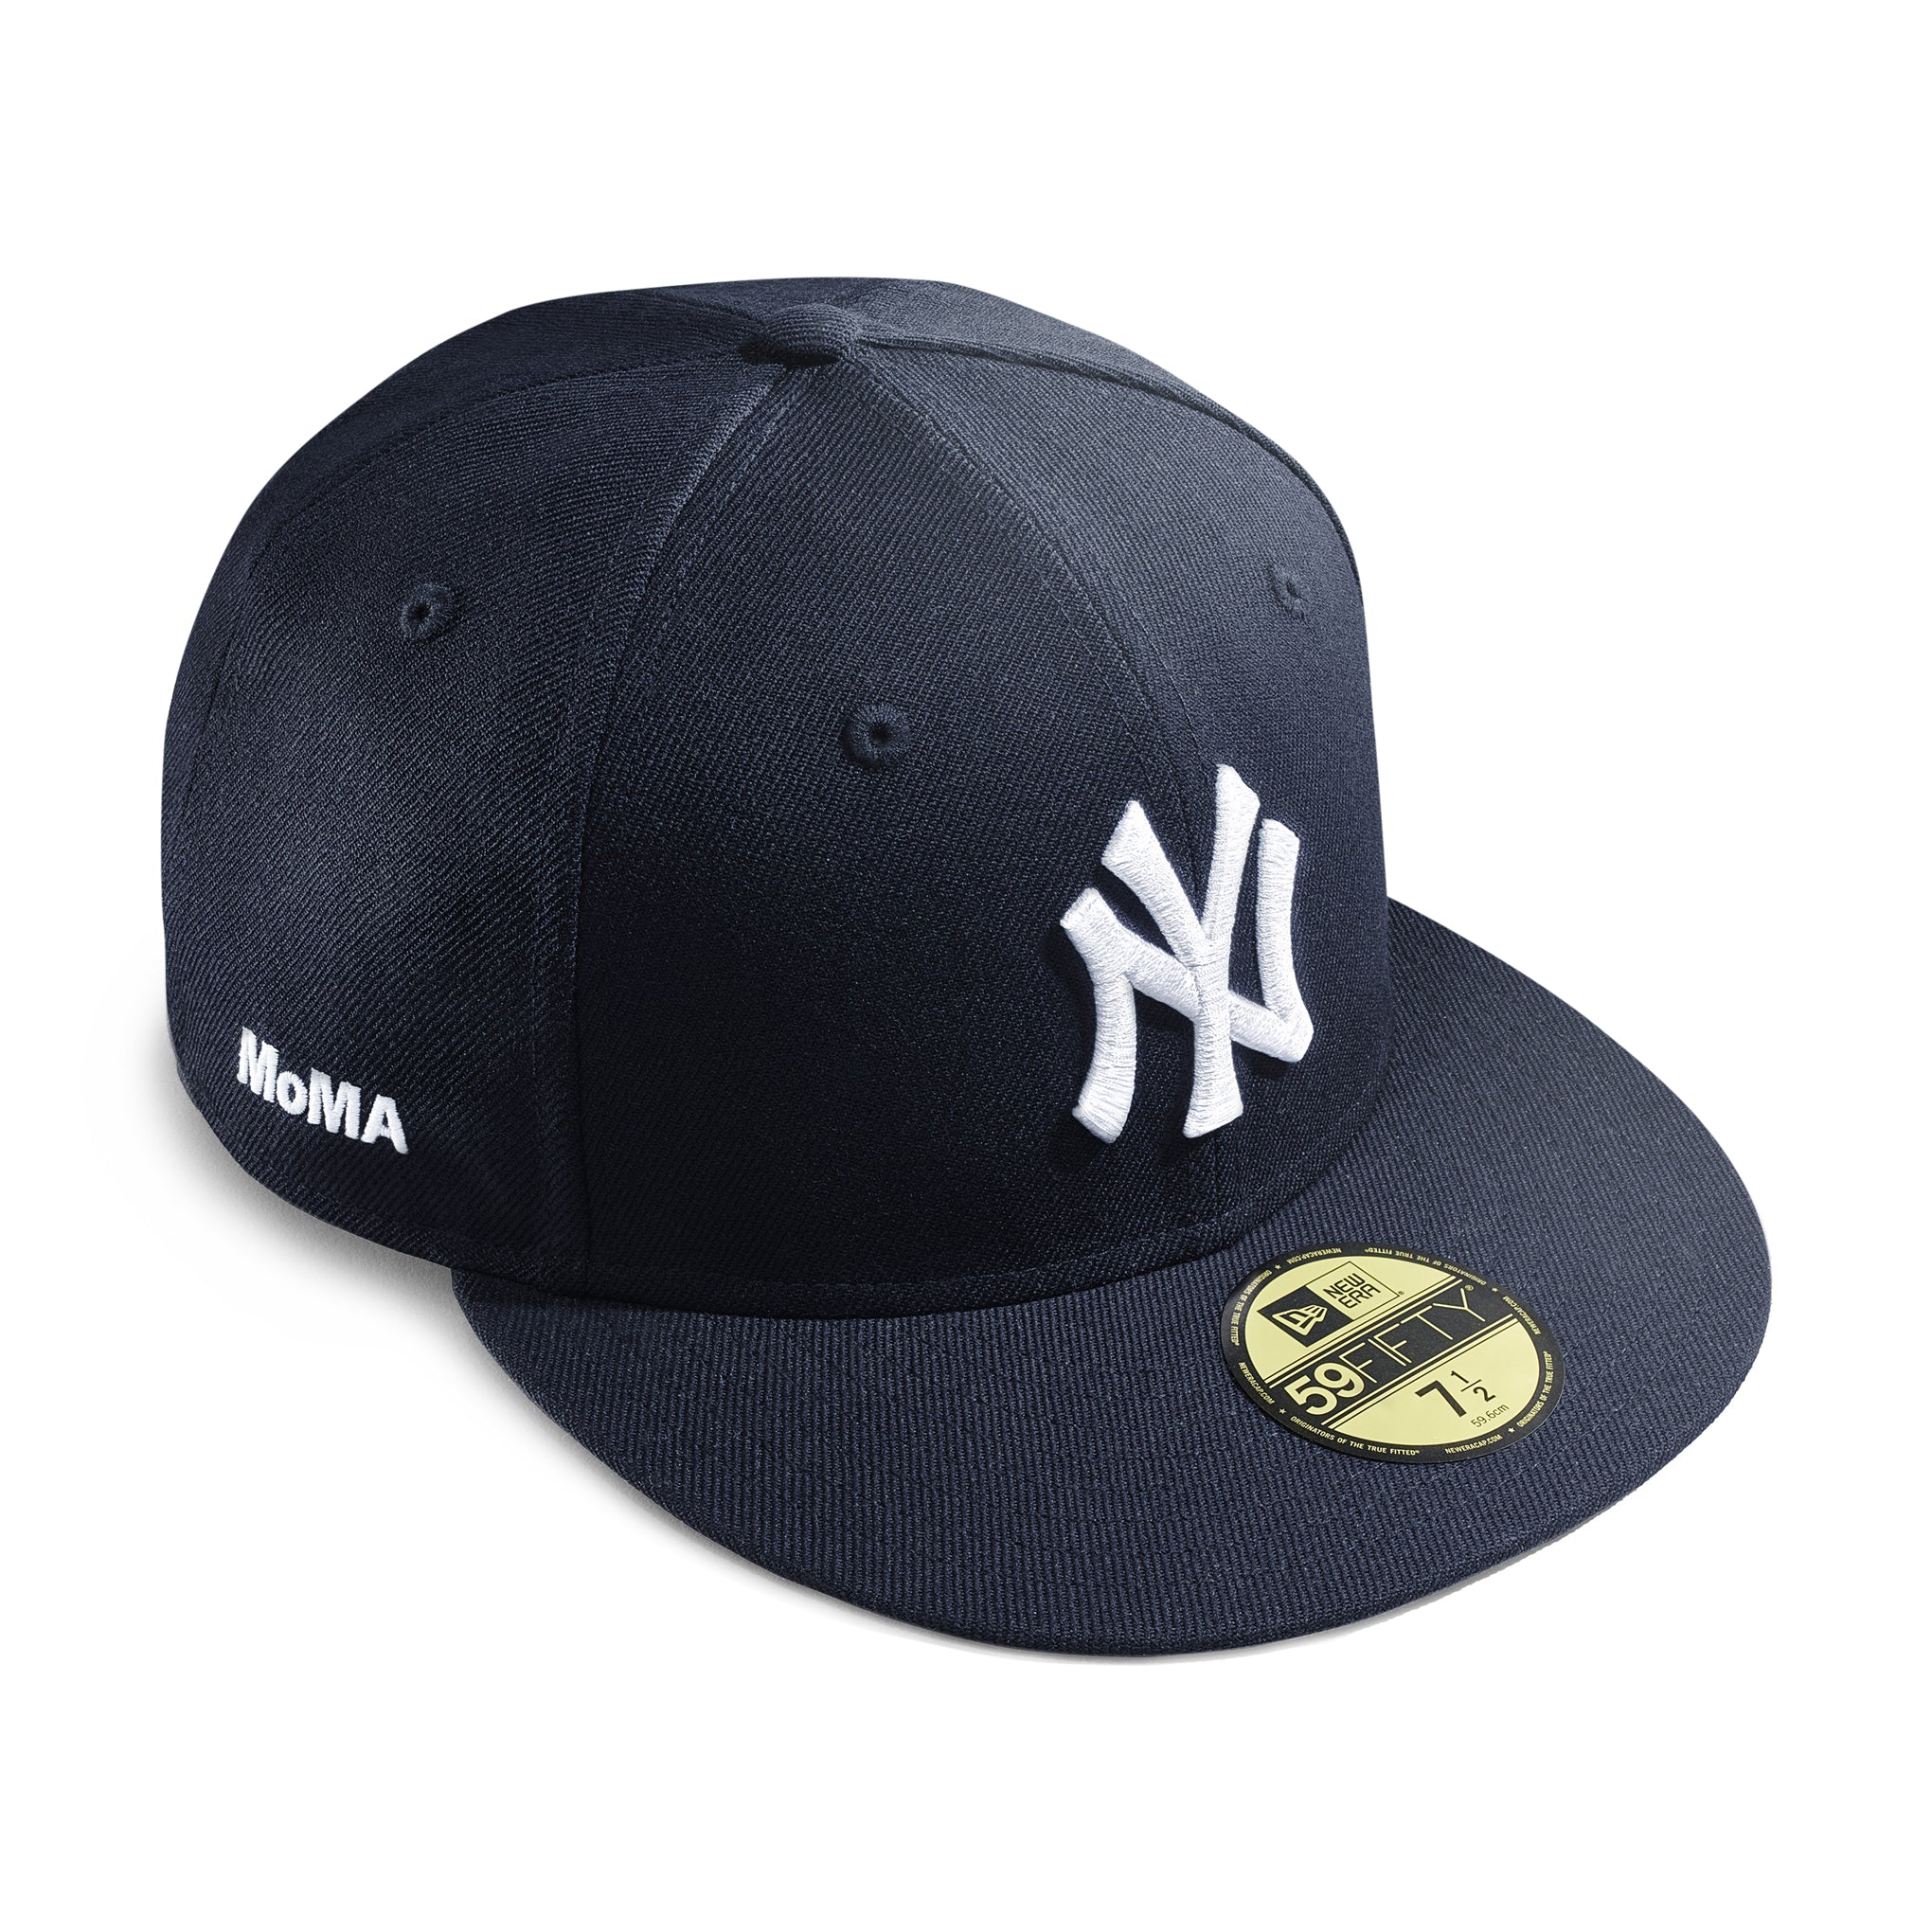 MoMA - MoMA – Design Cap Wool Store NY Yankees Baseball